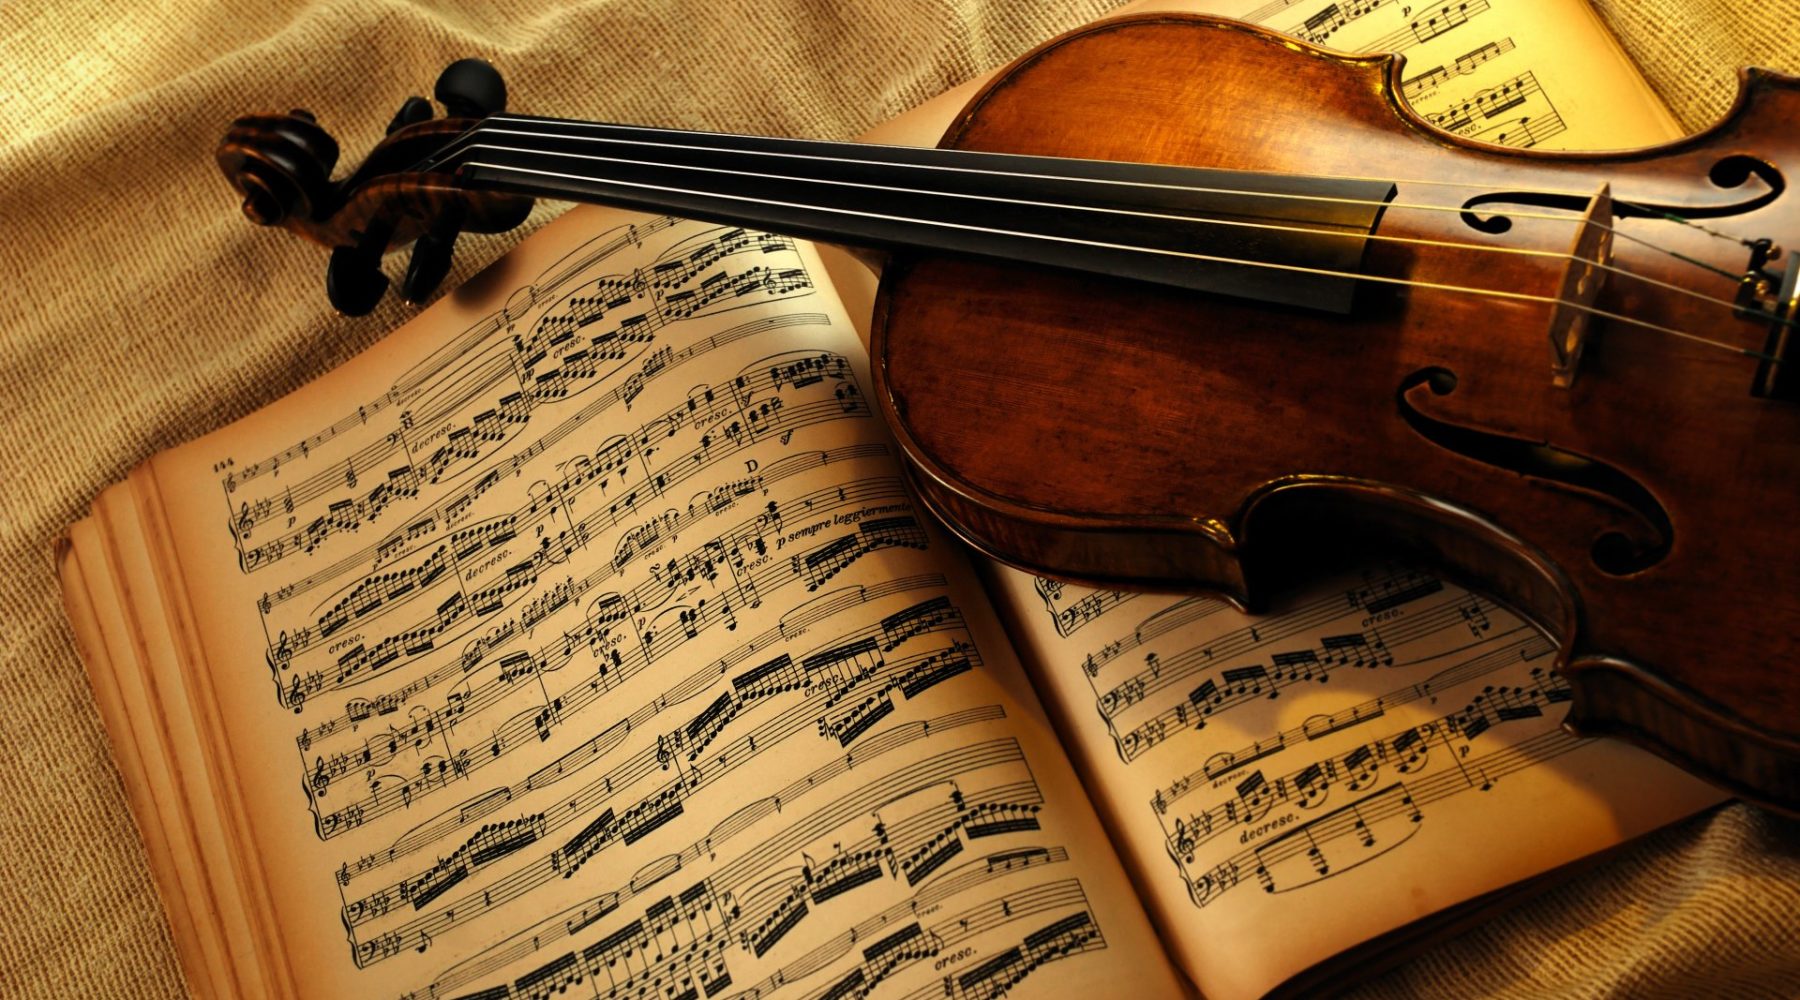 Cuarteto de Cuerdas de la Orquesta Filarmónica de Bruselas se presentará el próximo martes